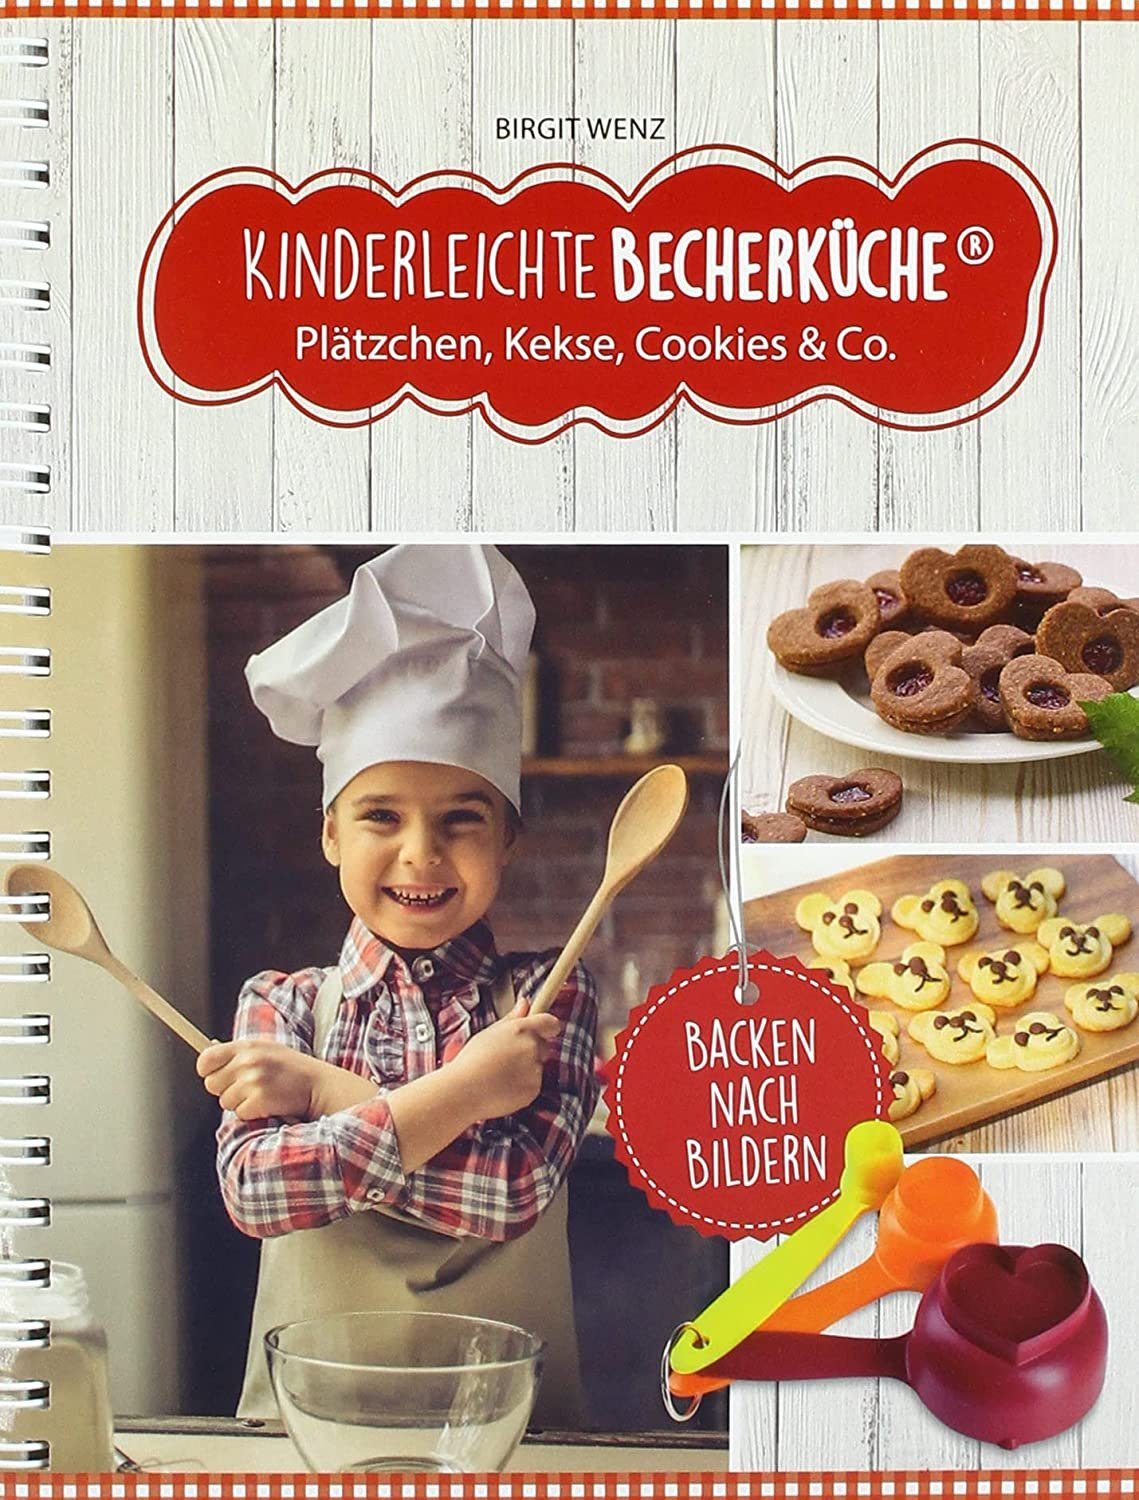 Becherküche Notizbuch Co., Cookies Plätzchen Backbuch & Kekse Rezeptbuch, Kinderleichte